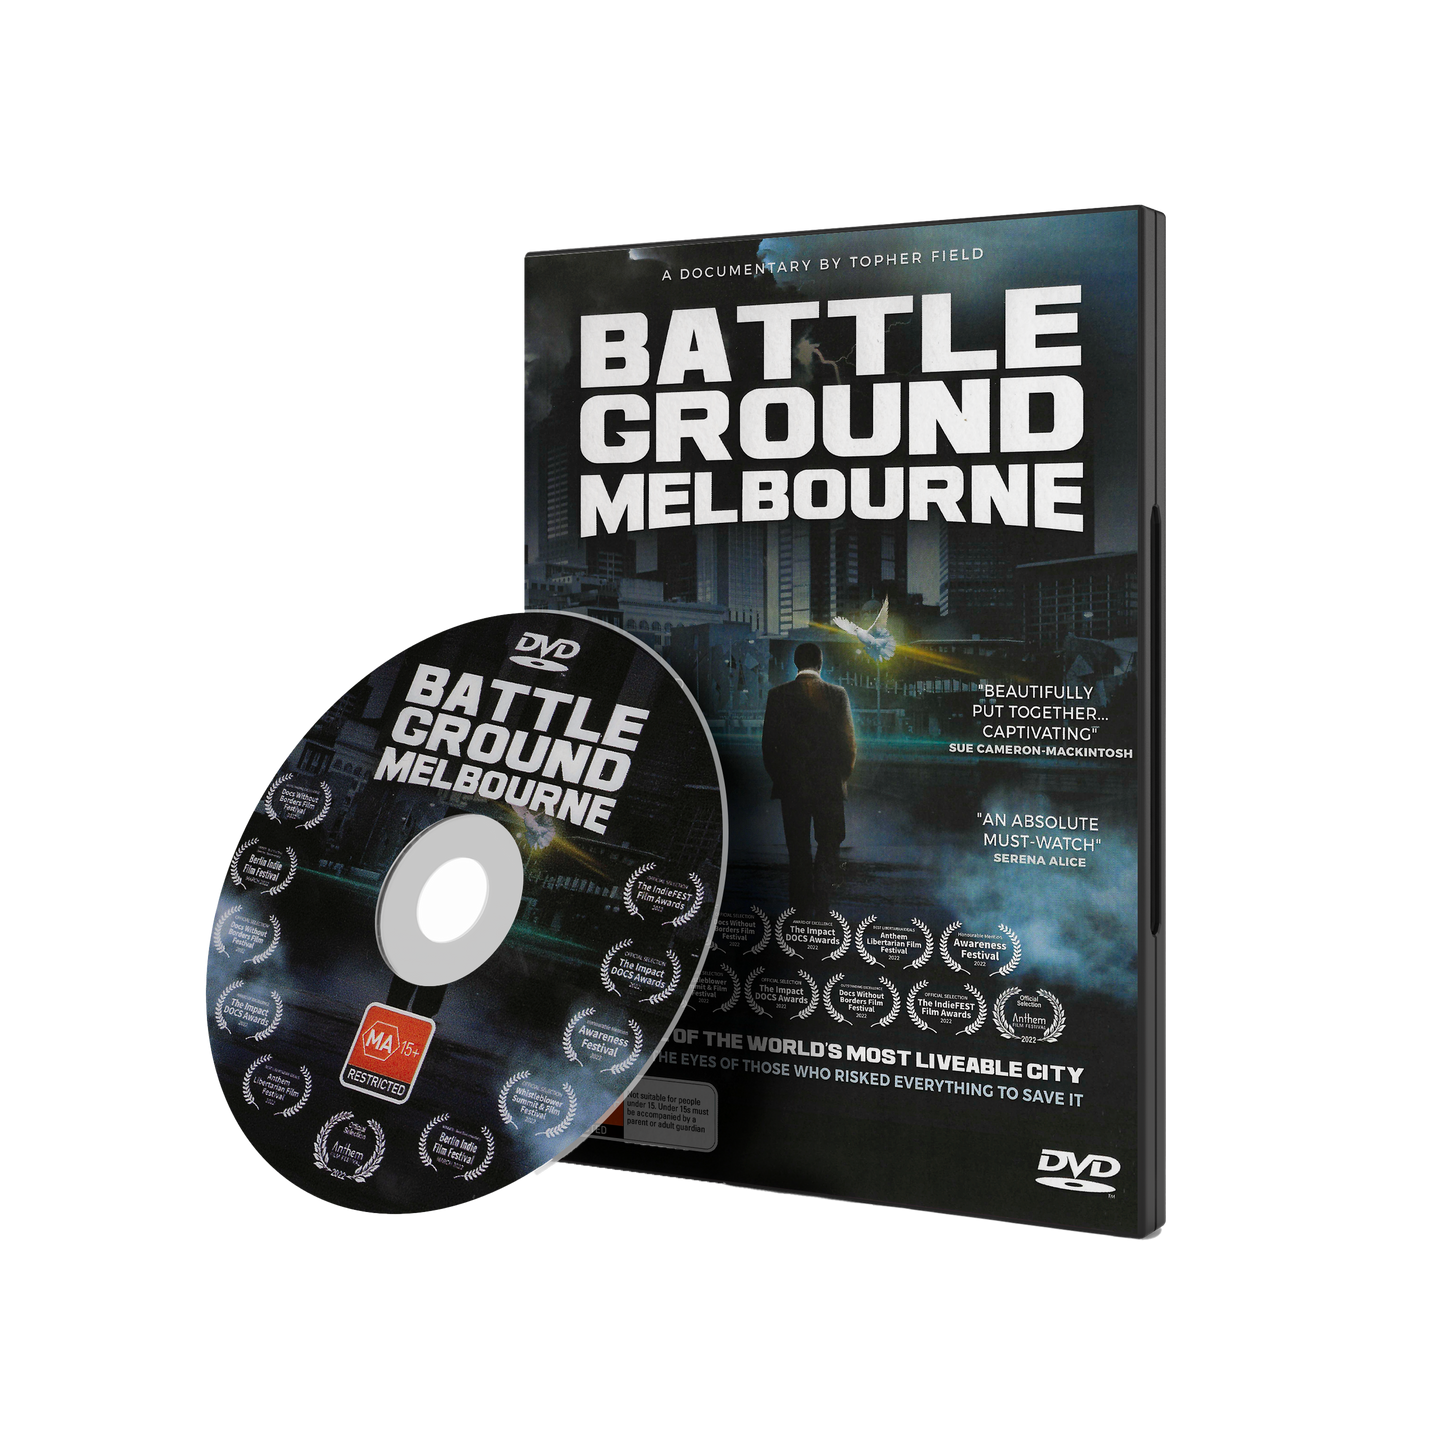 Battleground Melbourne DVD